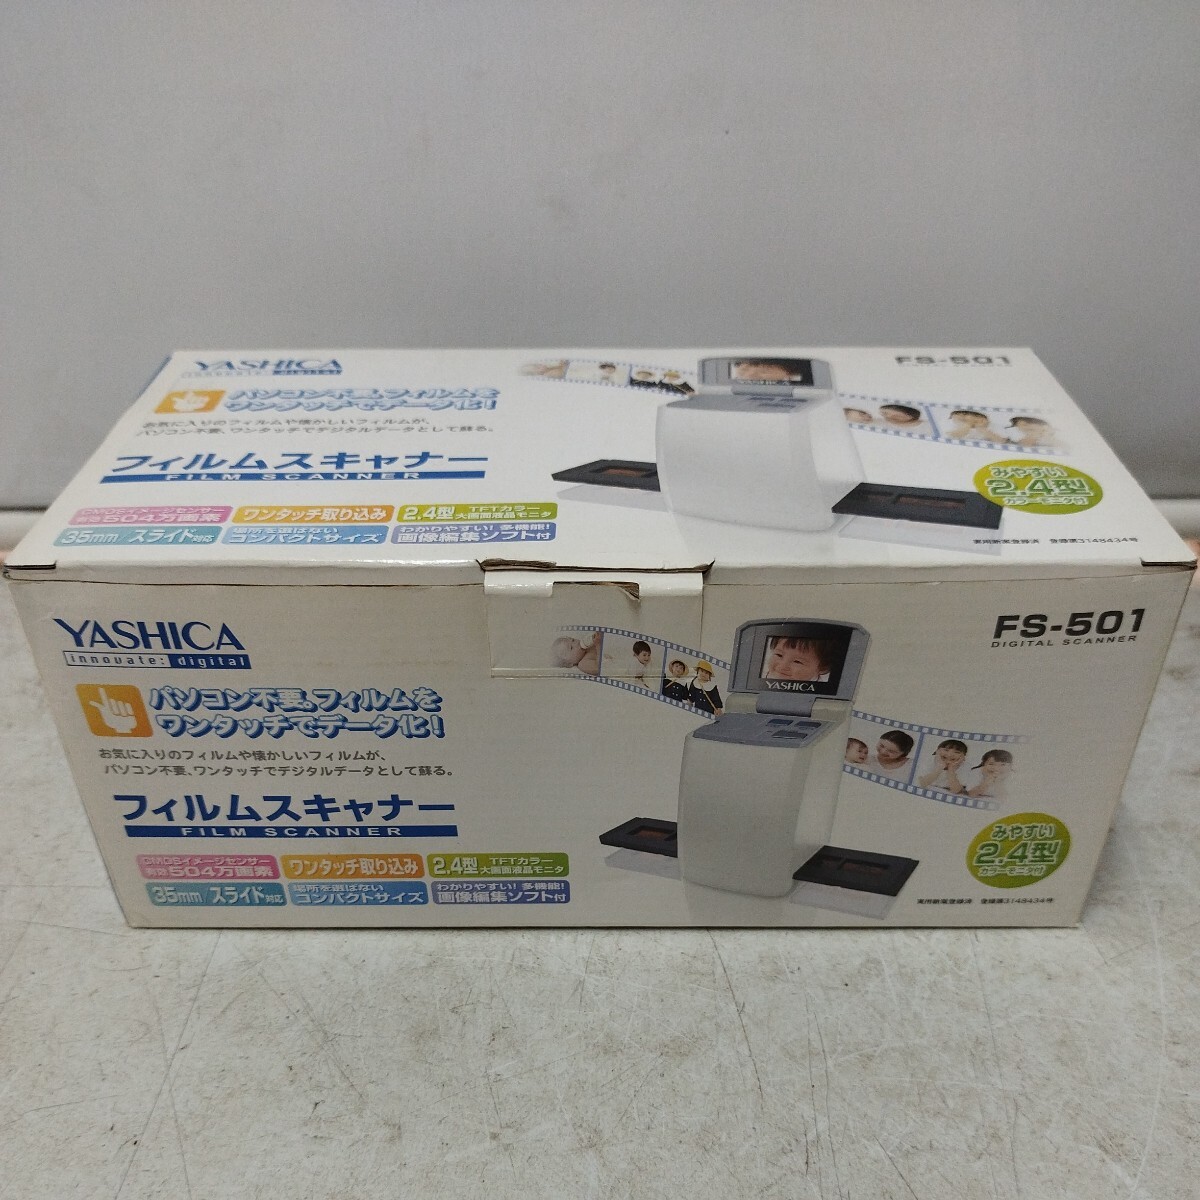 ヤシカ YASHICA FS-501 フィルム スキャナー 2.4型 カラー モニター 35mm スライド ワンタッチ デジタルデータ 箱付き【60サイズ】の画像1